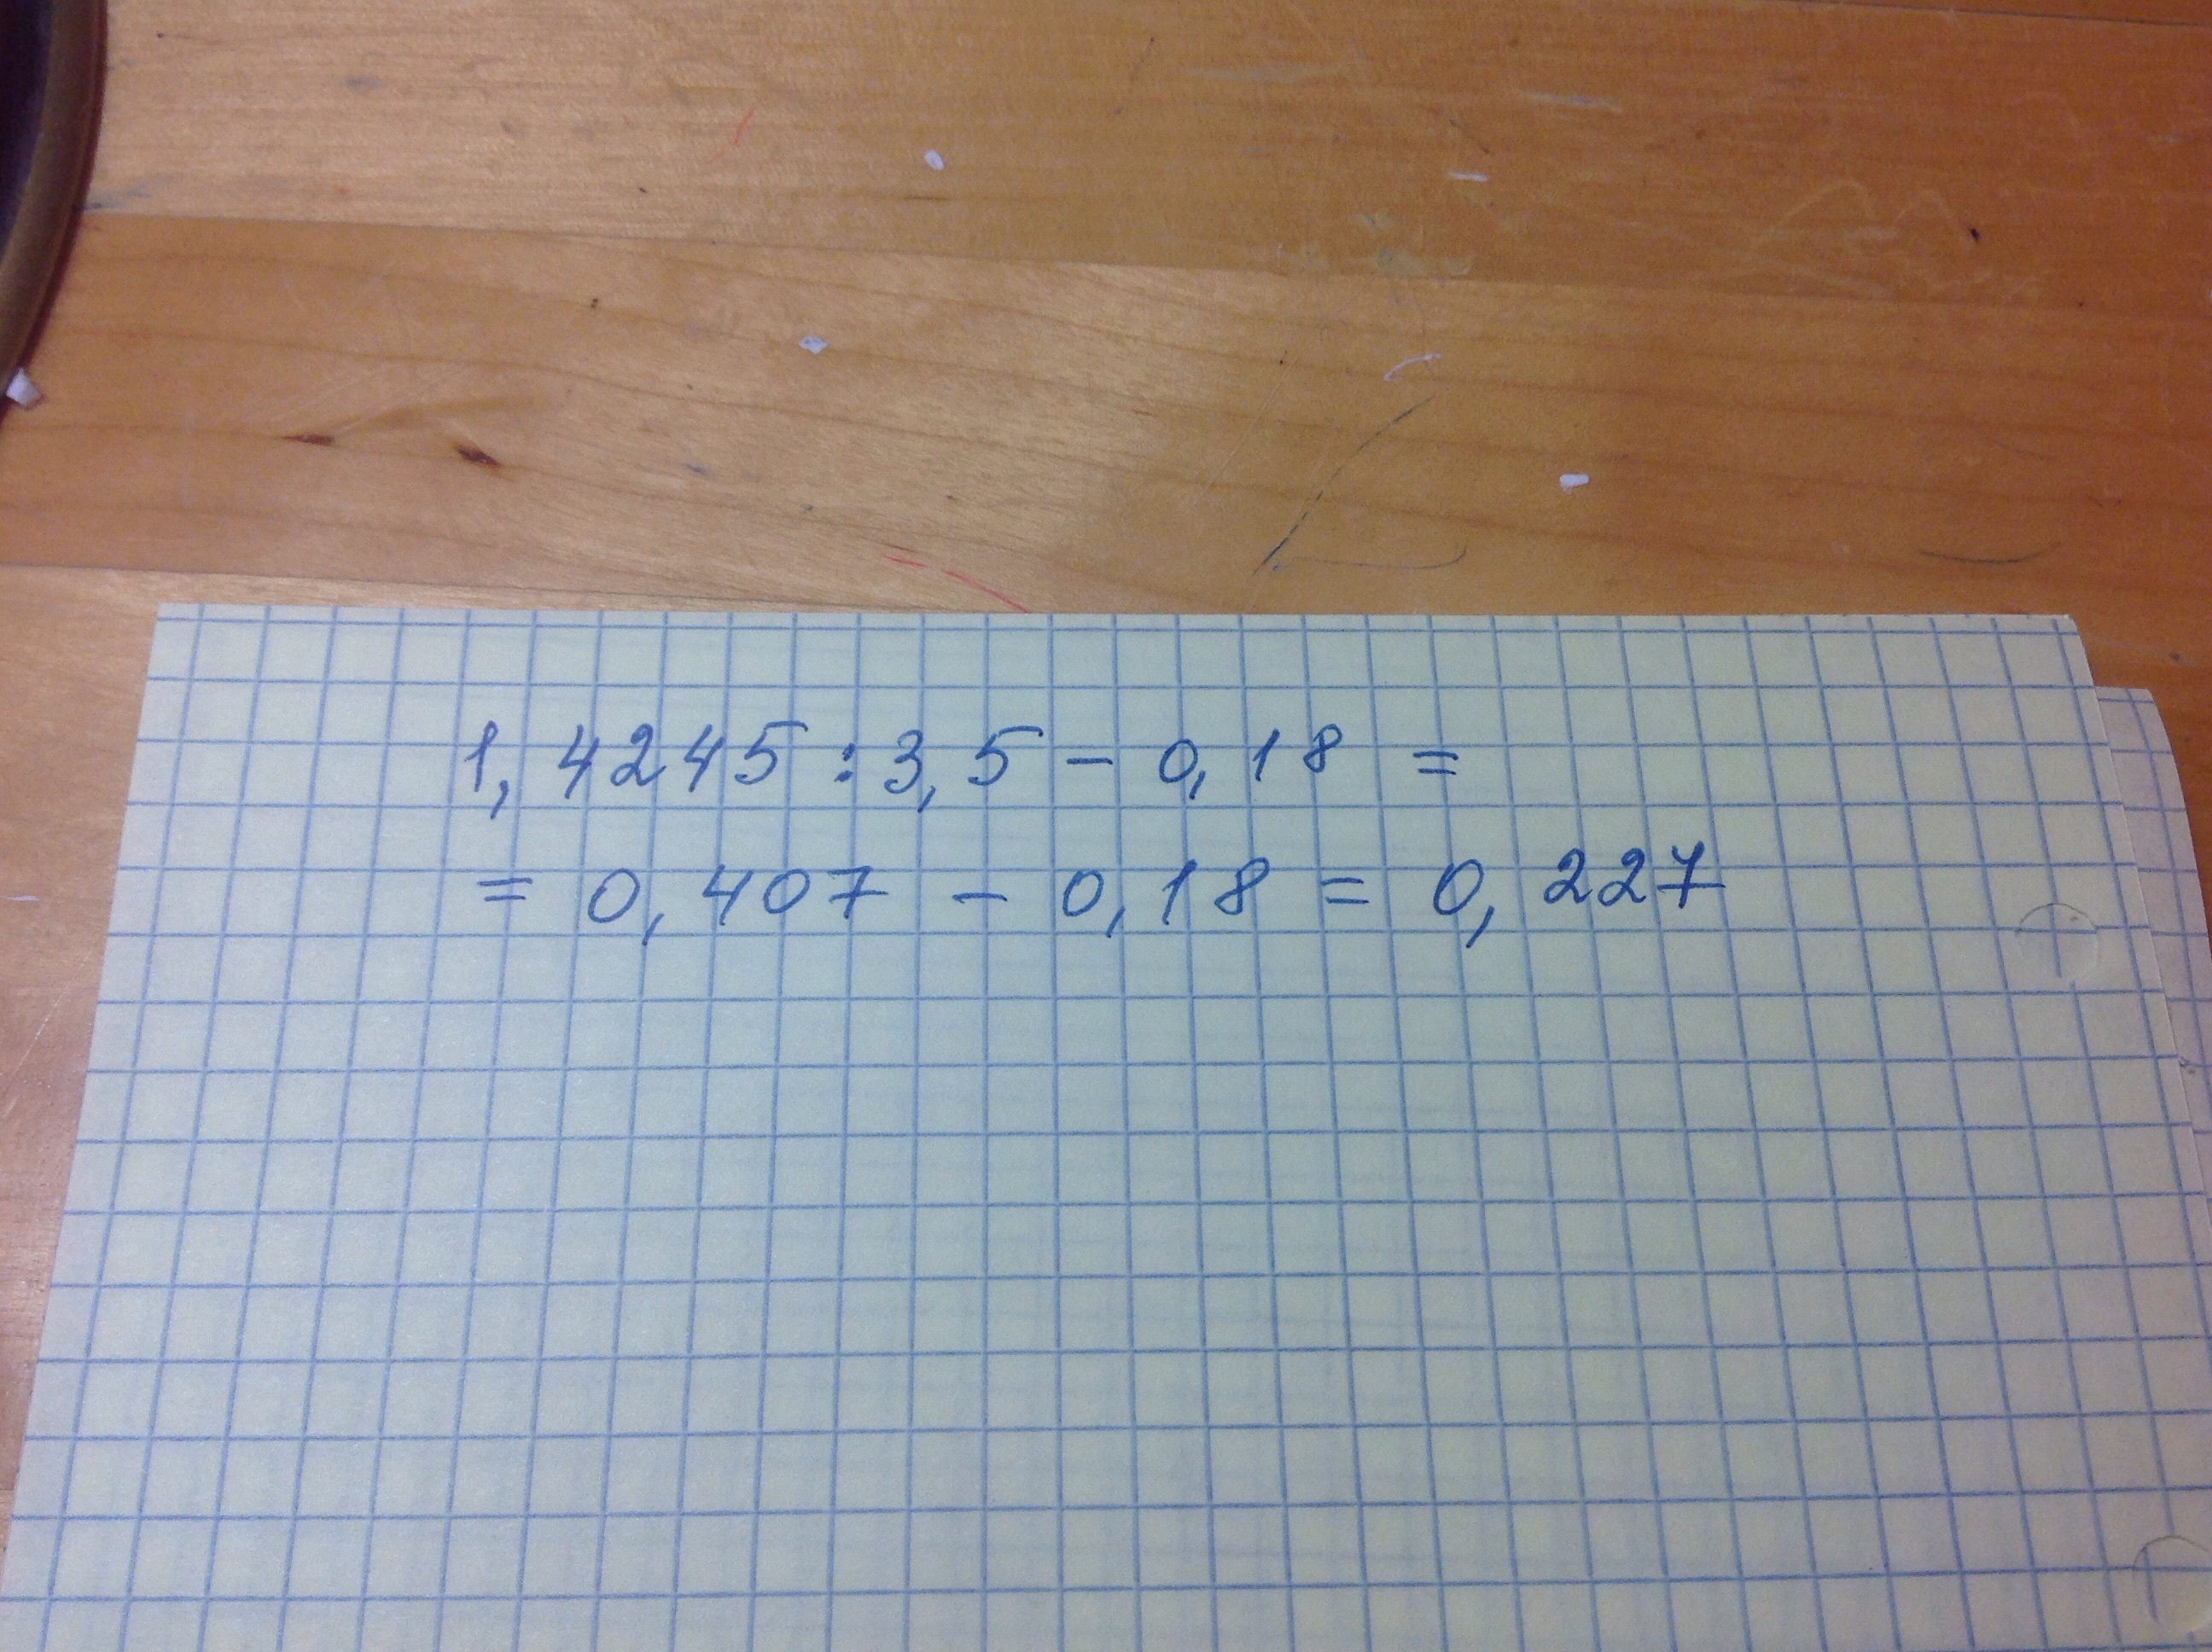 8 3 18 решить пример. Как решить пример 1,4245:3,5. Выполни действия 1000 900 2 835 5.